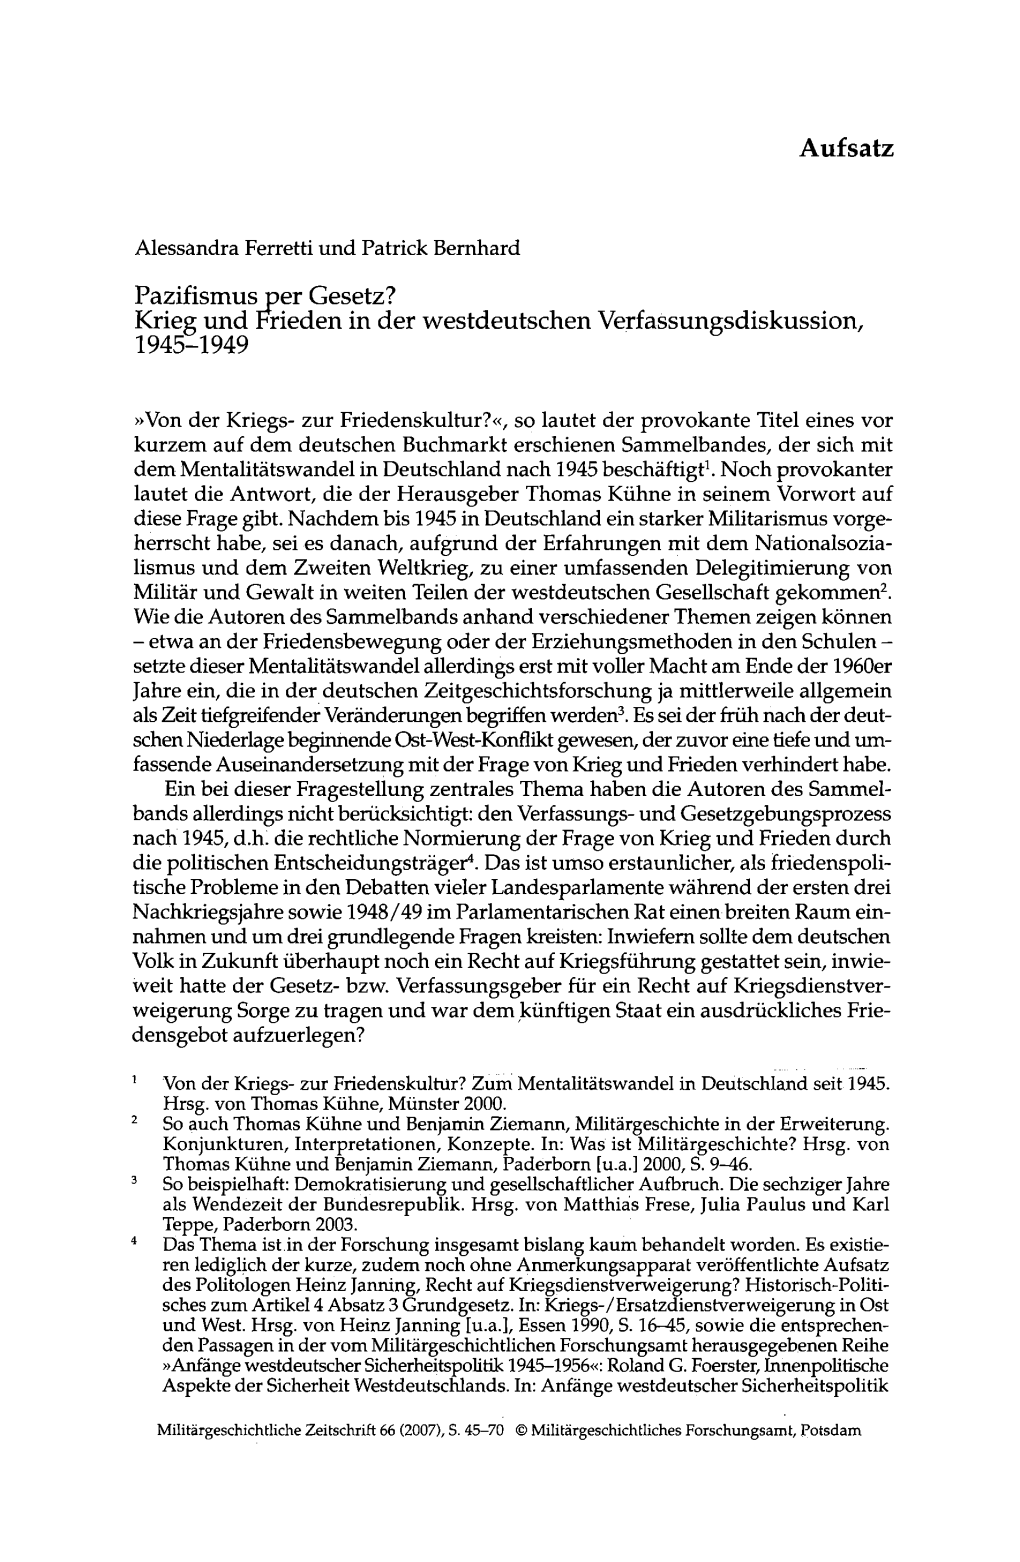 Pdf Internet/Bayerische Verfassung.Pdf